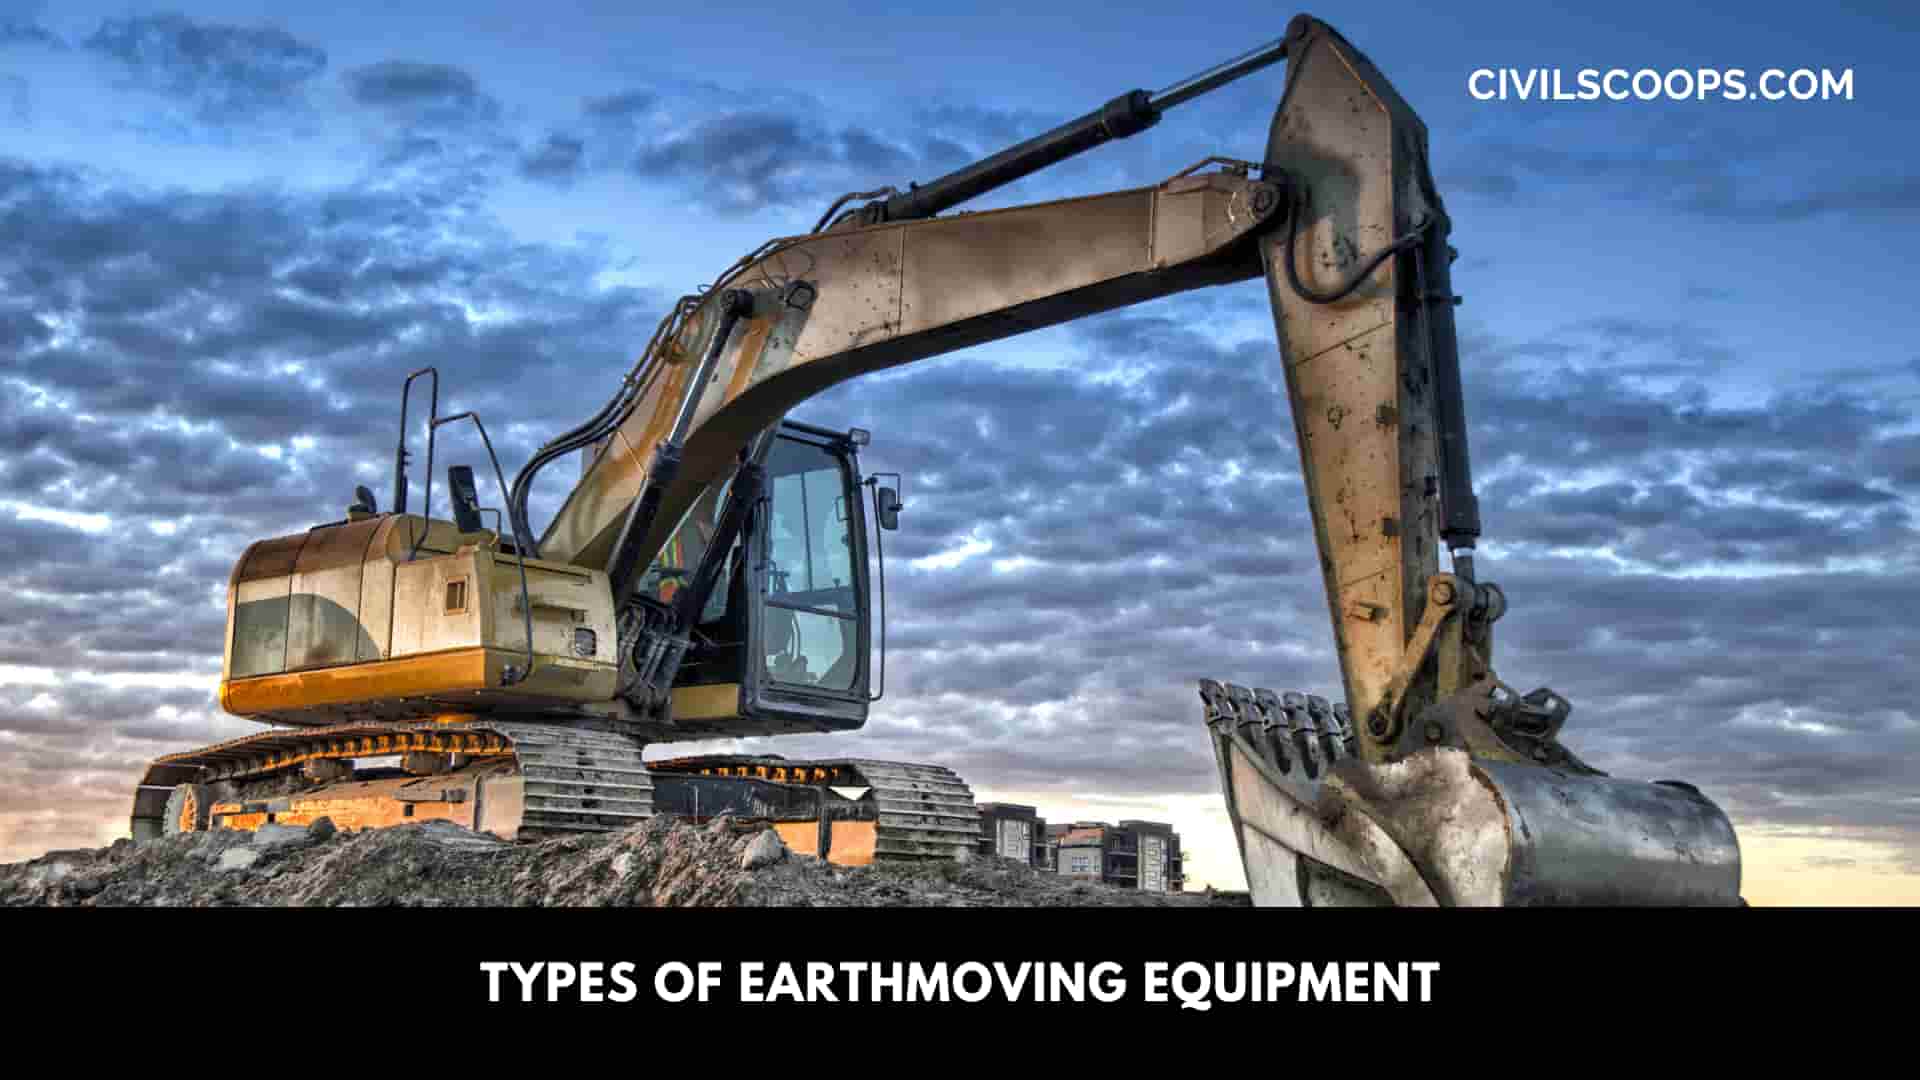 Types of Earthmoving Equipment